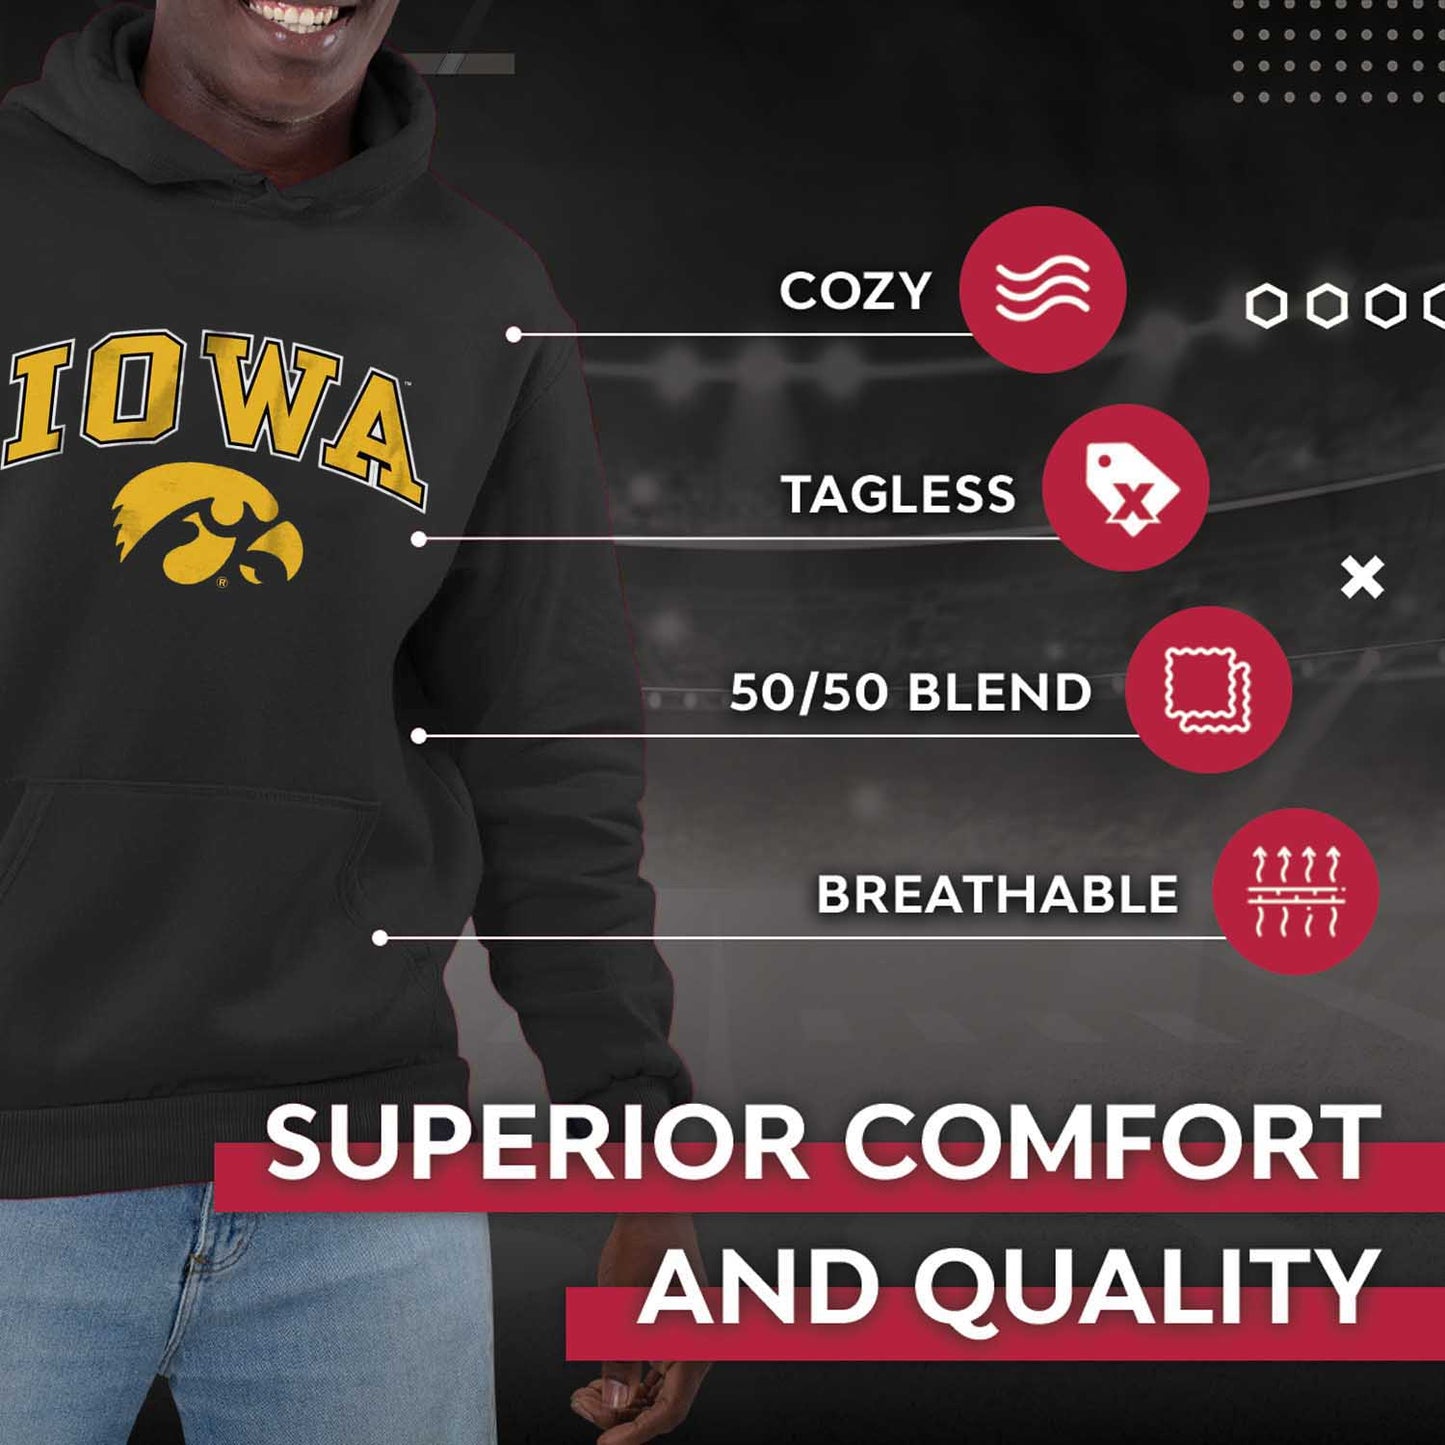 Iowa Hawkeyes Adult Arch & Logo Soft Style Gameday Hooded Sweatshirt - Black